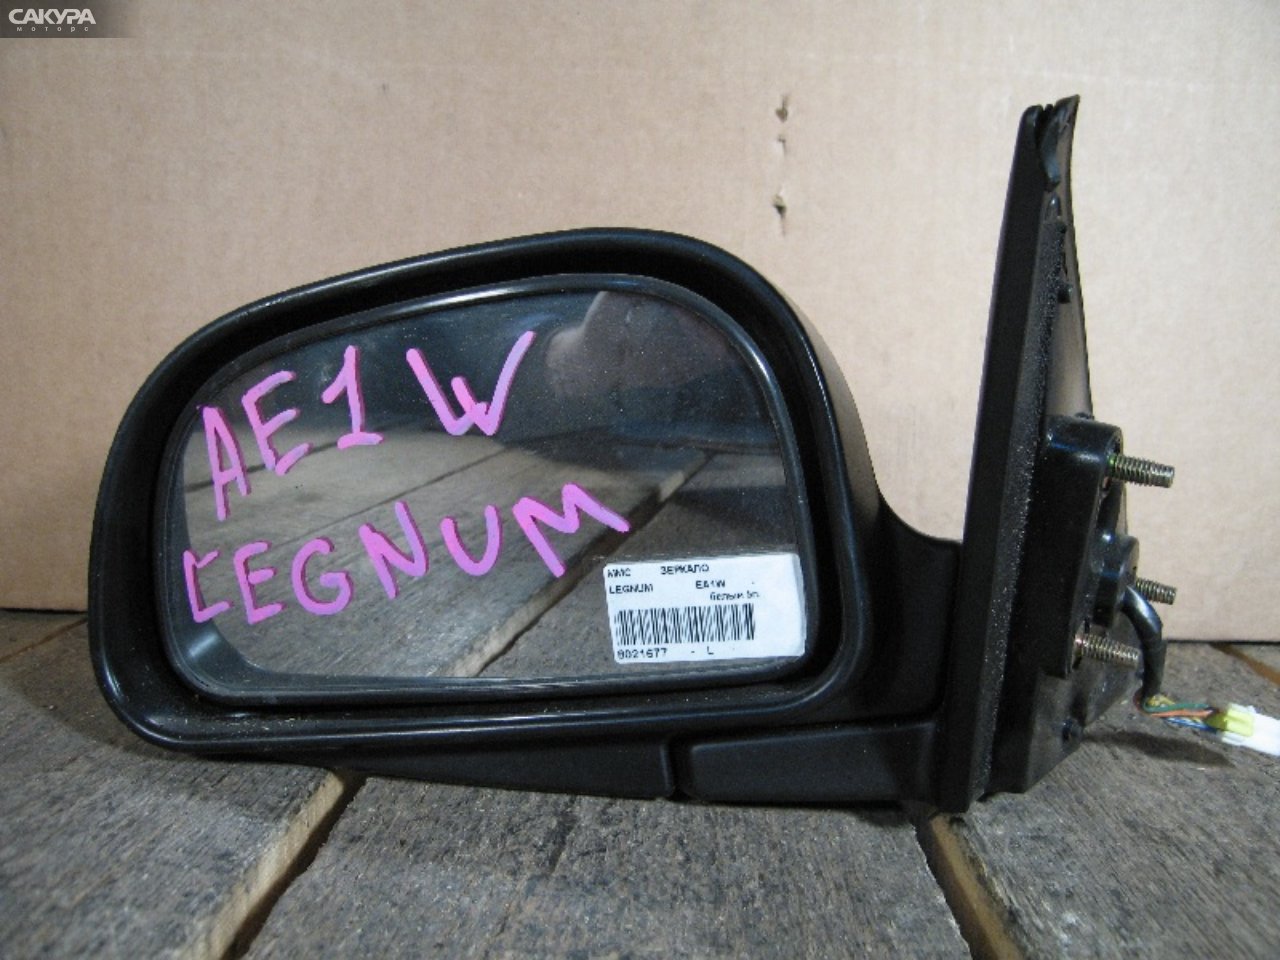 Зеркало боковое левое Mitsubishi Legnum EA1W: купить в Сакура Абакан.